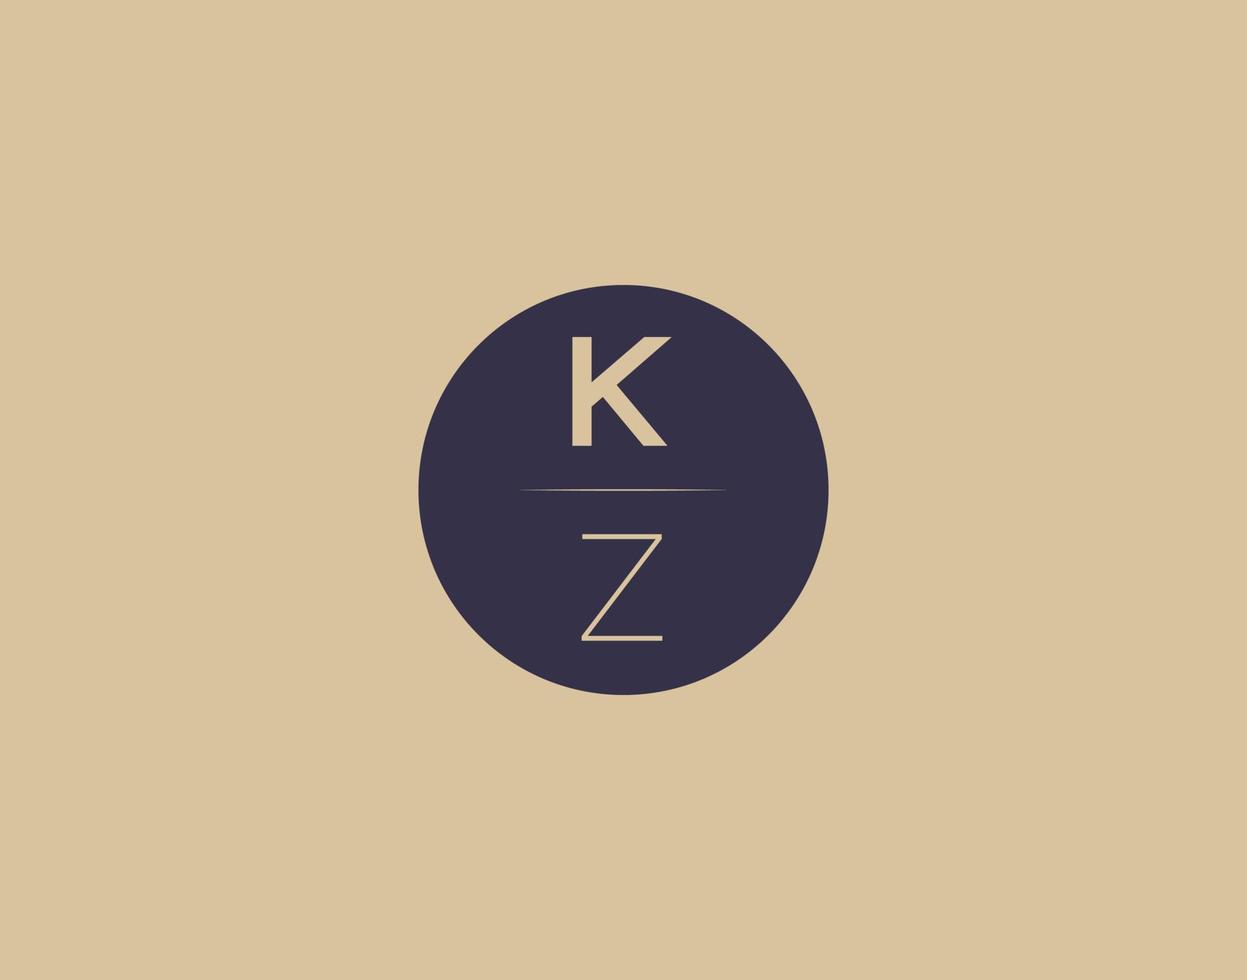 Imágenes de vector de diseño de logotipo elegante moderno de letra kz